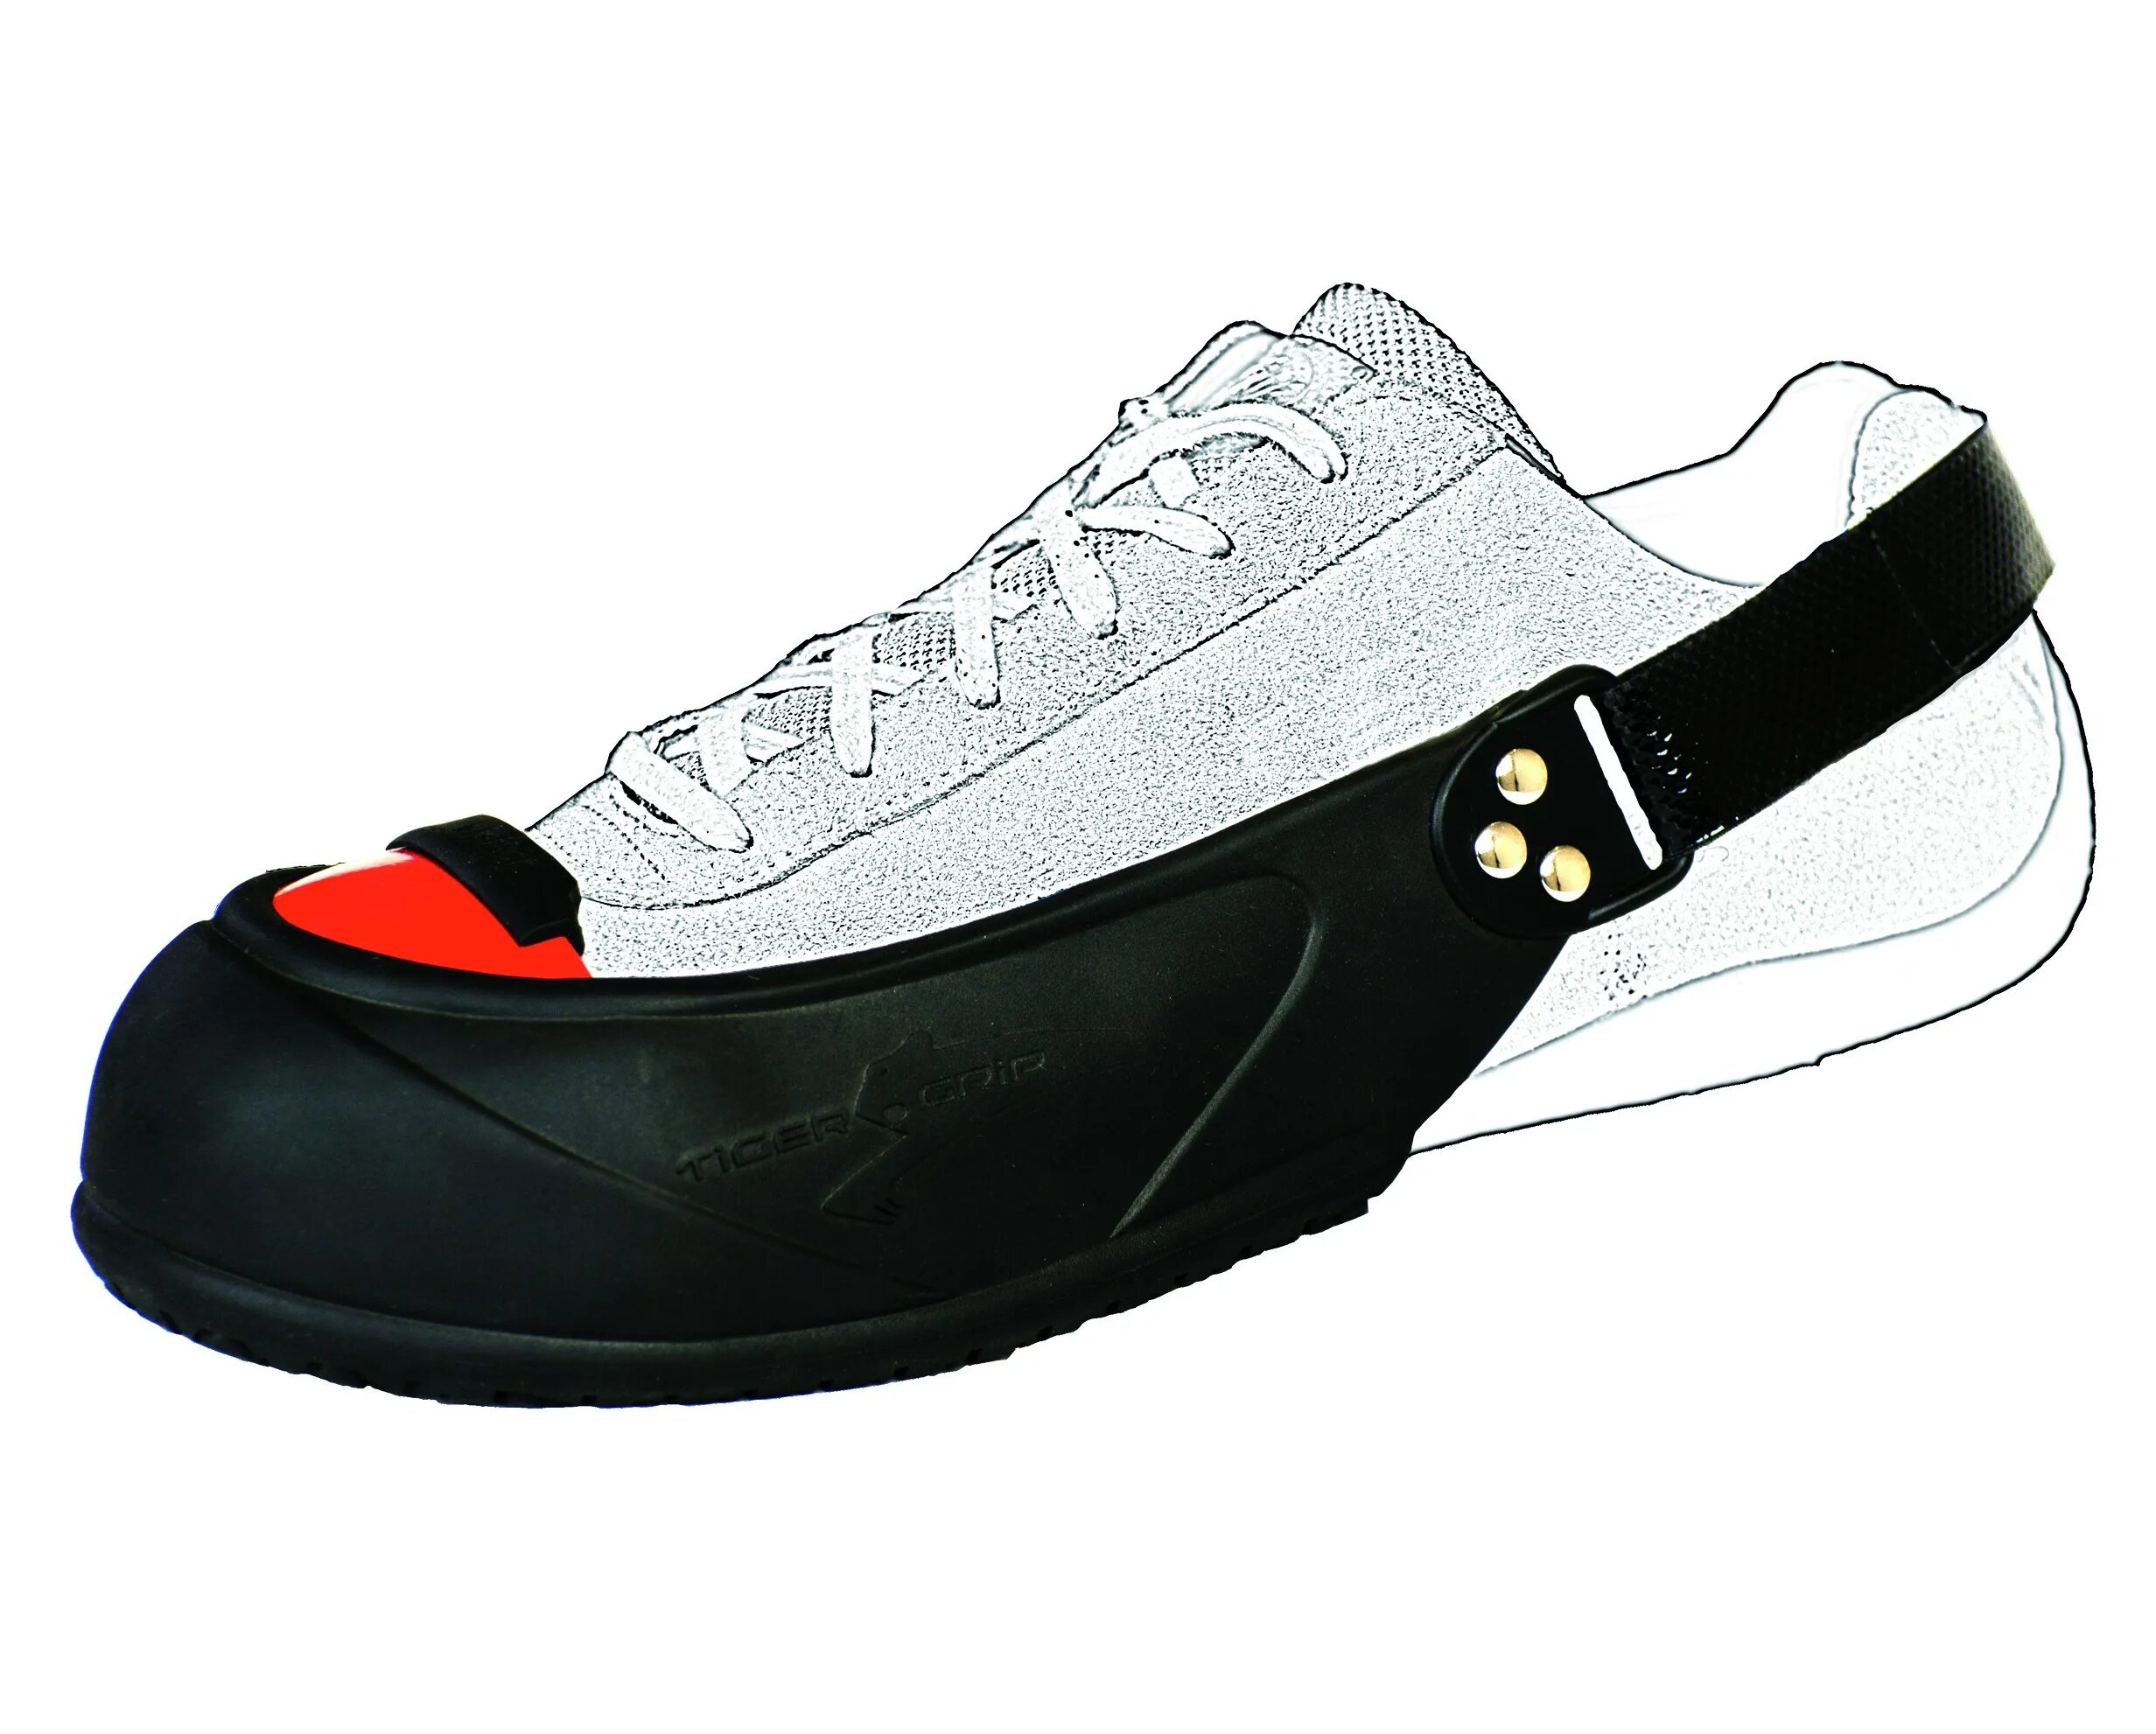 Защитные подноски Tiger Grip. Подносок защитный съемный универсальный (размер 35-45). Гостевые защитные подноски Tiger Grip Visitor. Защитные подноски на обувь. Защита обуви купить